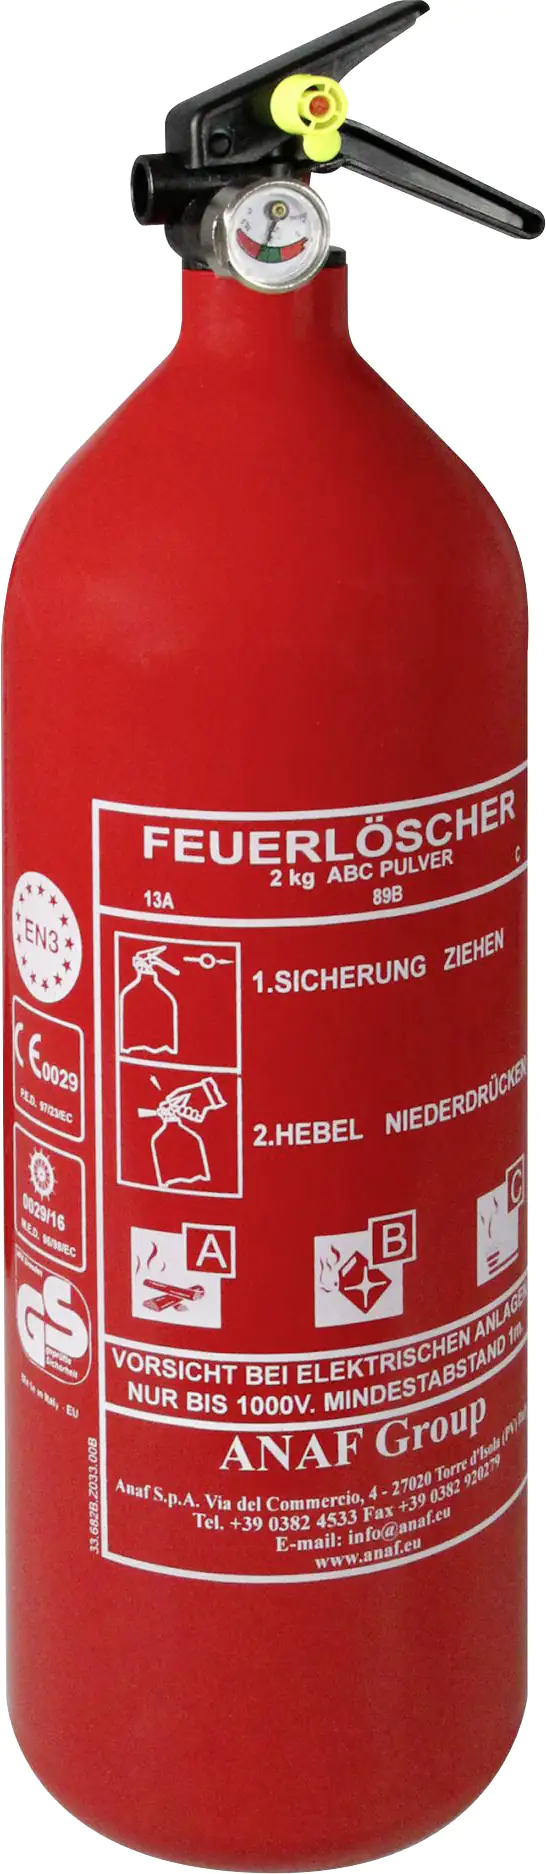 Feuerlöscher Auto, ABC, Pulver, 2kg, 18,99 €